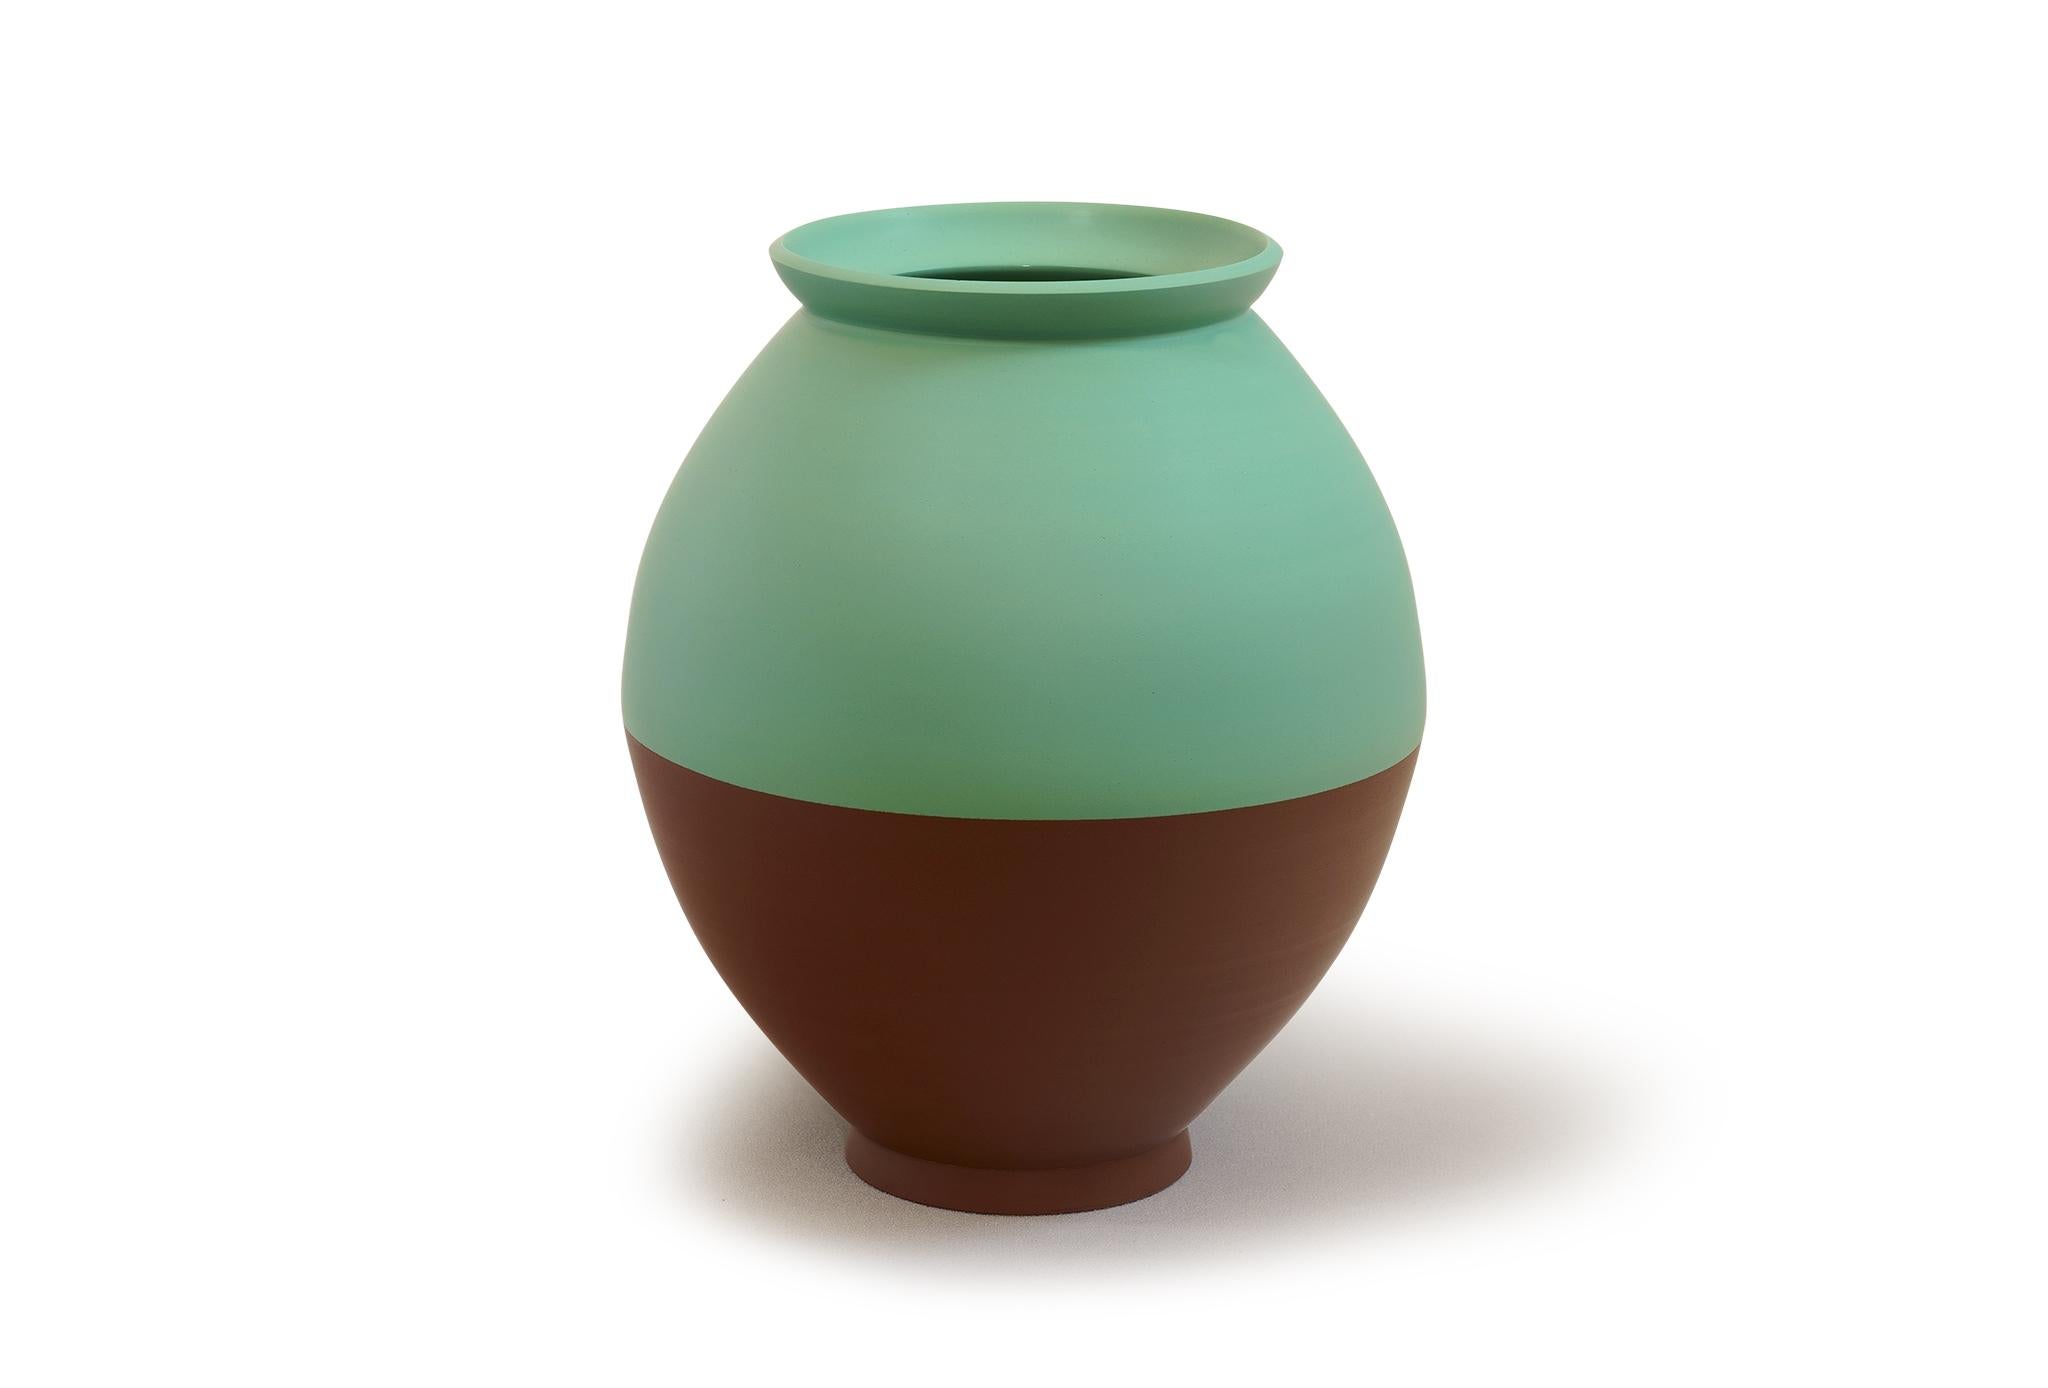 Halbe Vase von Jung Hong
Einzigartiges Stück
Abmessungen: B 31 x T 31 x H 37 cm
MATERIALIEN: Porzellan

Gefärbtes Porzellan, bei hoher Temperatur gebrannt, polierte, seidig feine Oberfläche.

Ich verwende die Technik des 'sang-gam' (=Einlegearbeit)